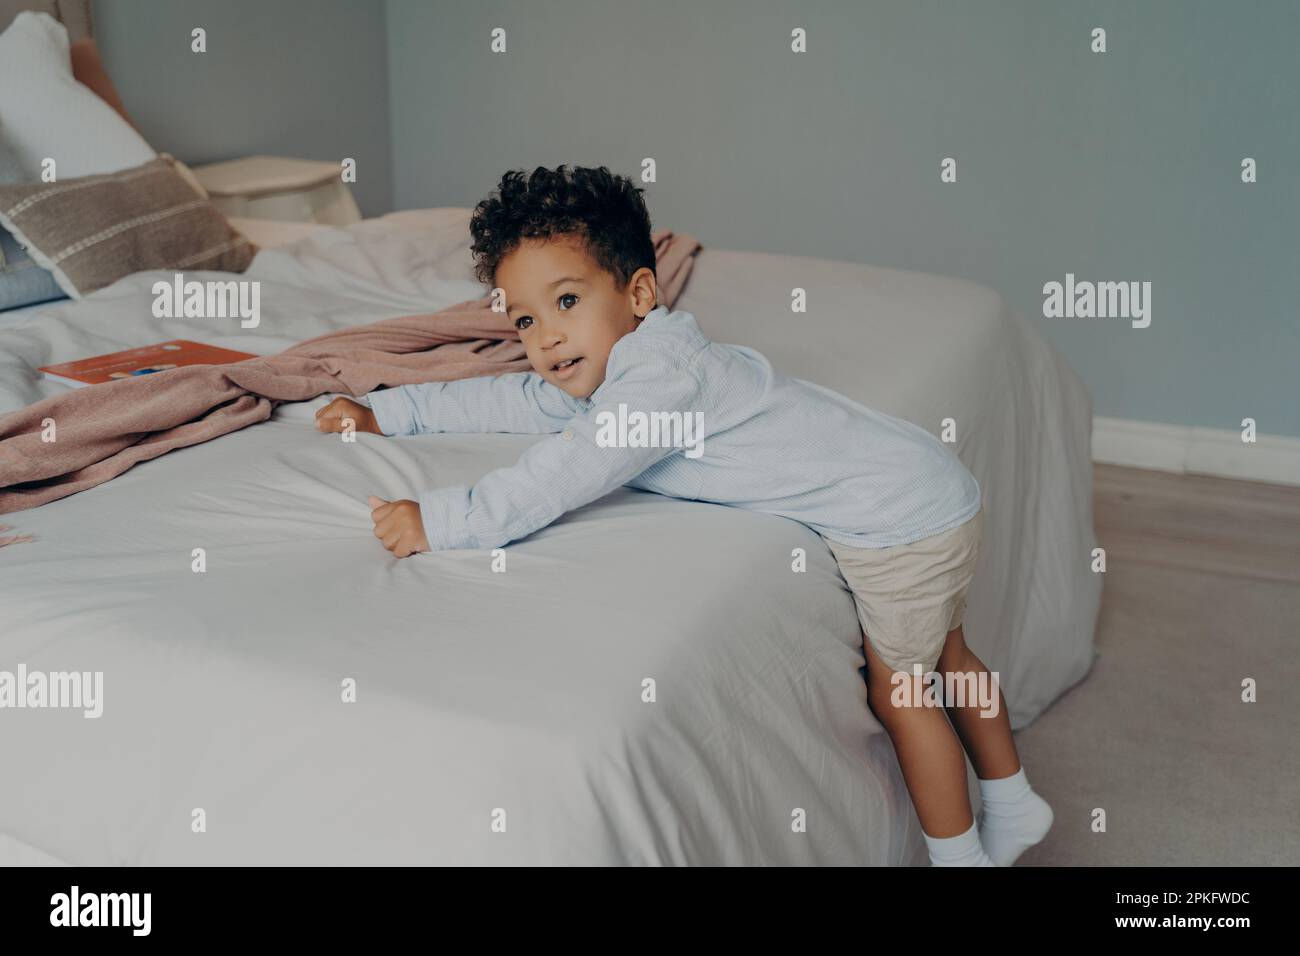 Süßer kleiner afro-amerikanischer Junge in stilvollen Baumwollkleidung, der versucht, auf ein weißes, weiches Bett zu klettern, sich am Bettlaken festzuhalten, während er in einem hellen Bett spielt Stockfoto